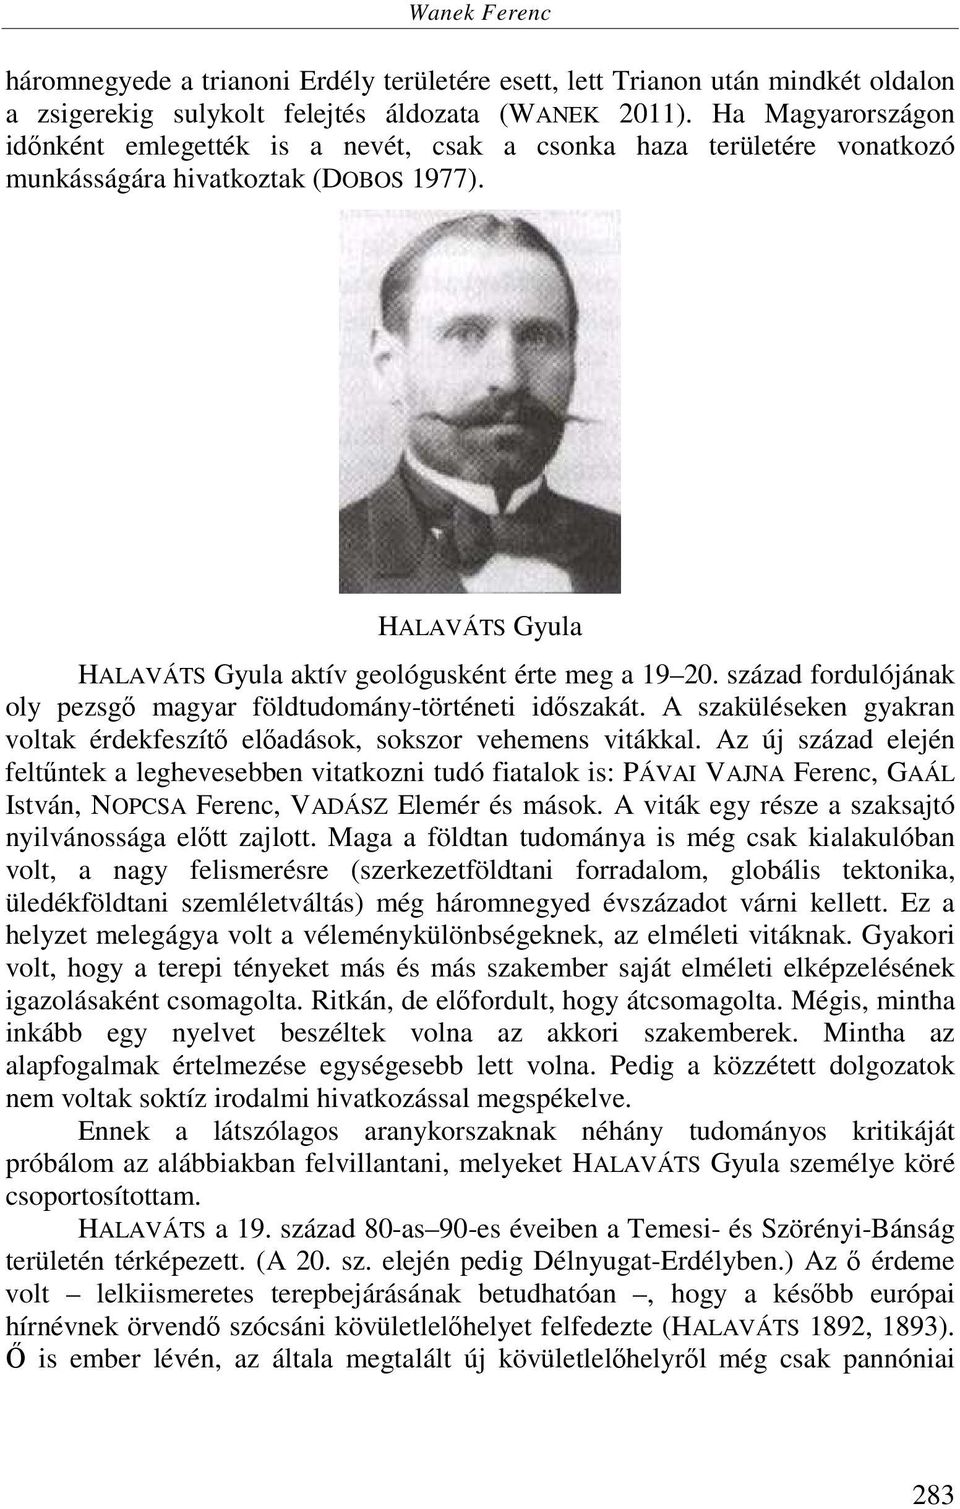 század fordulójának oly pezsgő magyar földtudomány-történeti időszakát. A szaküléseken gyakran voltak érdekfeszítő előadások, sokszor vehemens vitákkal.